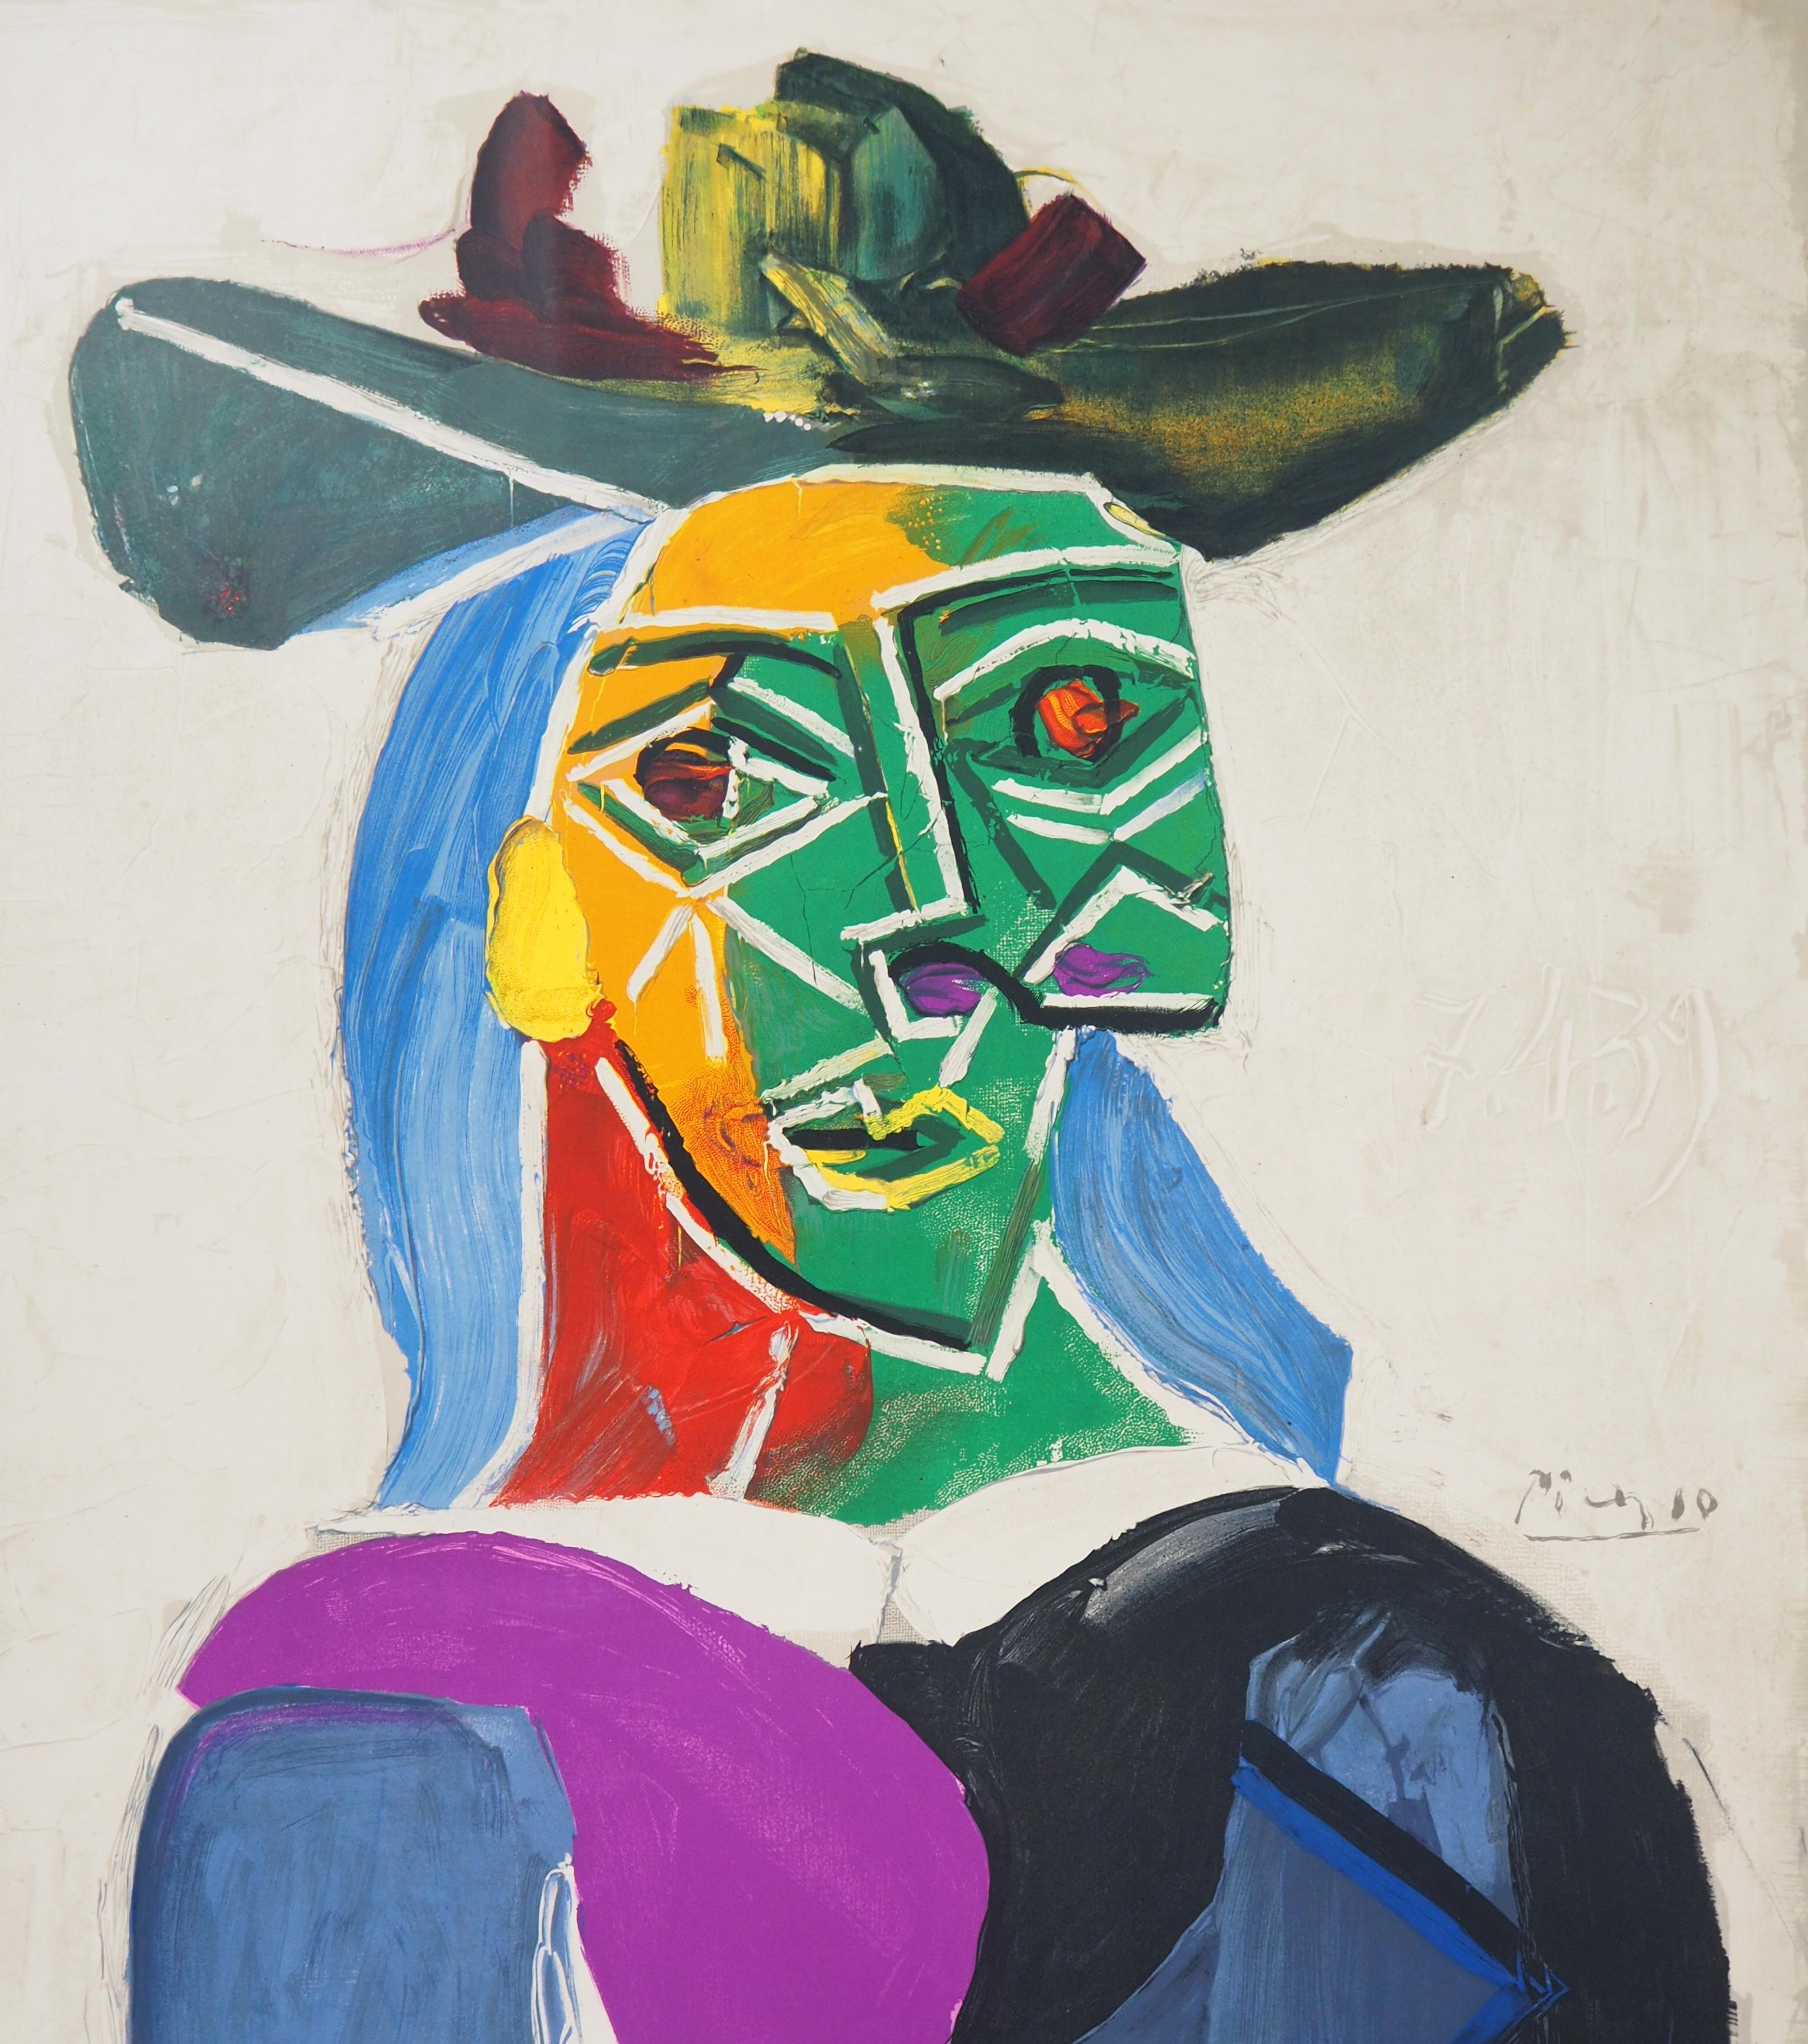 (after) Pablo Picasso Portrait Print - Woman with a Hat (Dora Maar) - Lithograph, Mourlot 1956 (Czwiklitzer #120)